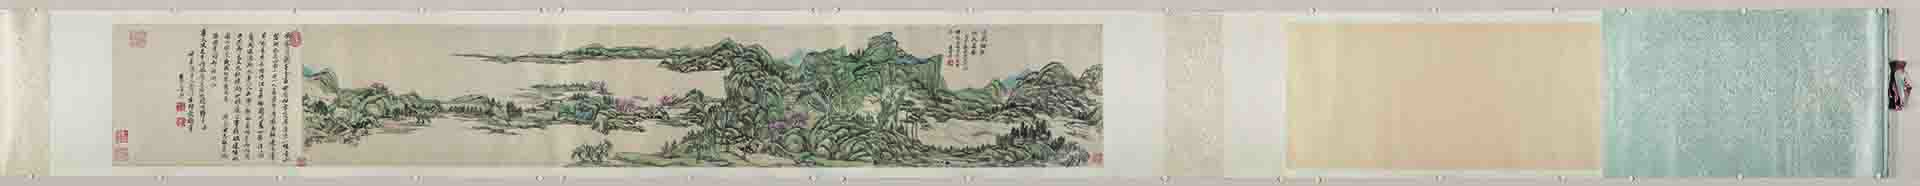 清 王原祁 江国垂纶图卷26 x 146.1 cm